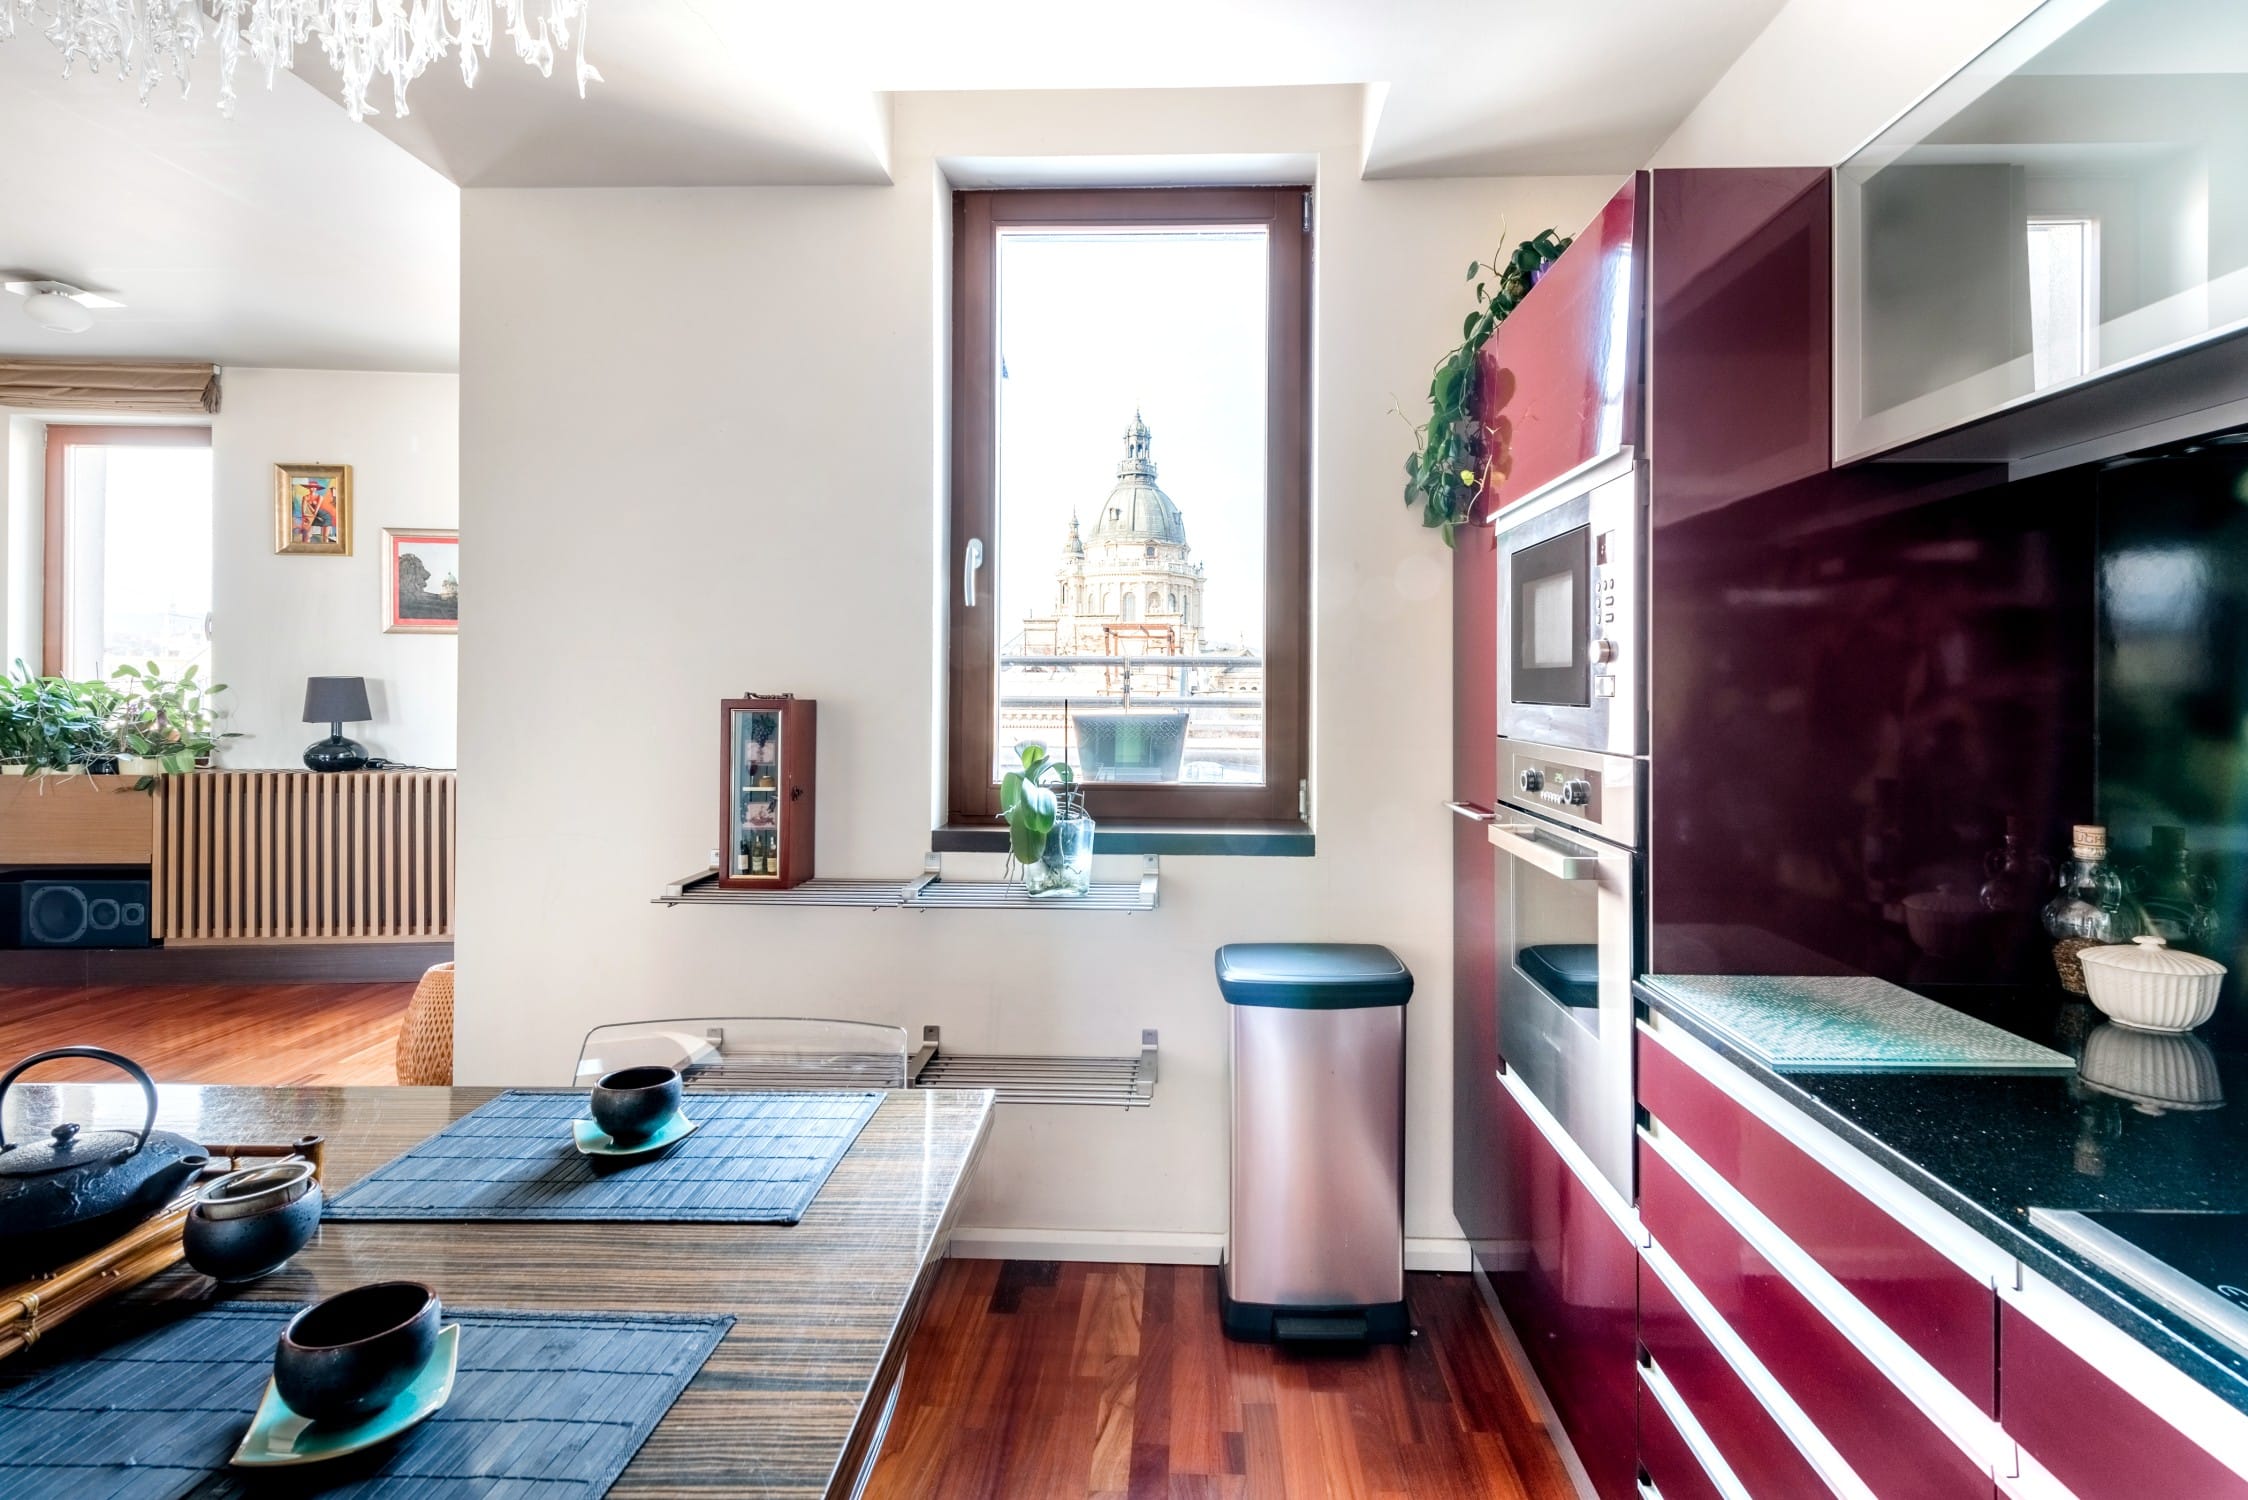 Découvrez les meilleurs Airbnb à Budapest